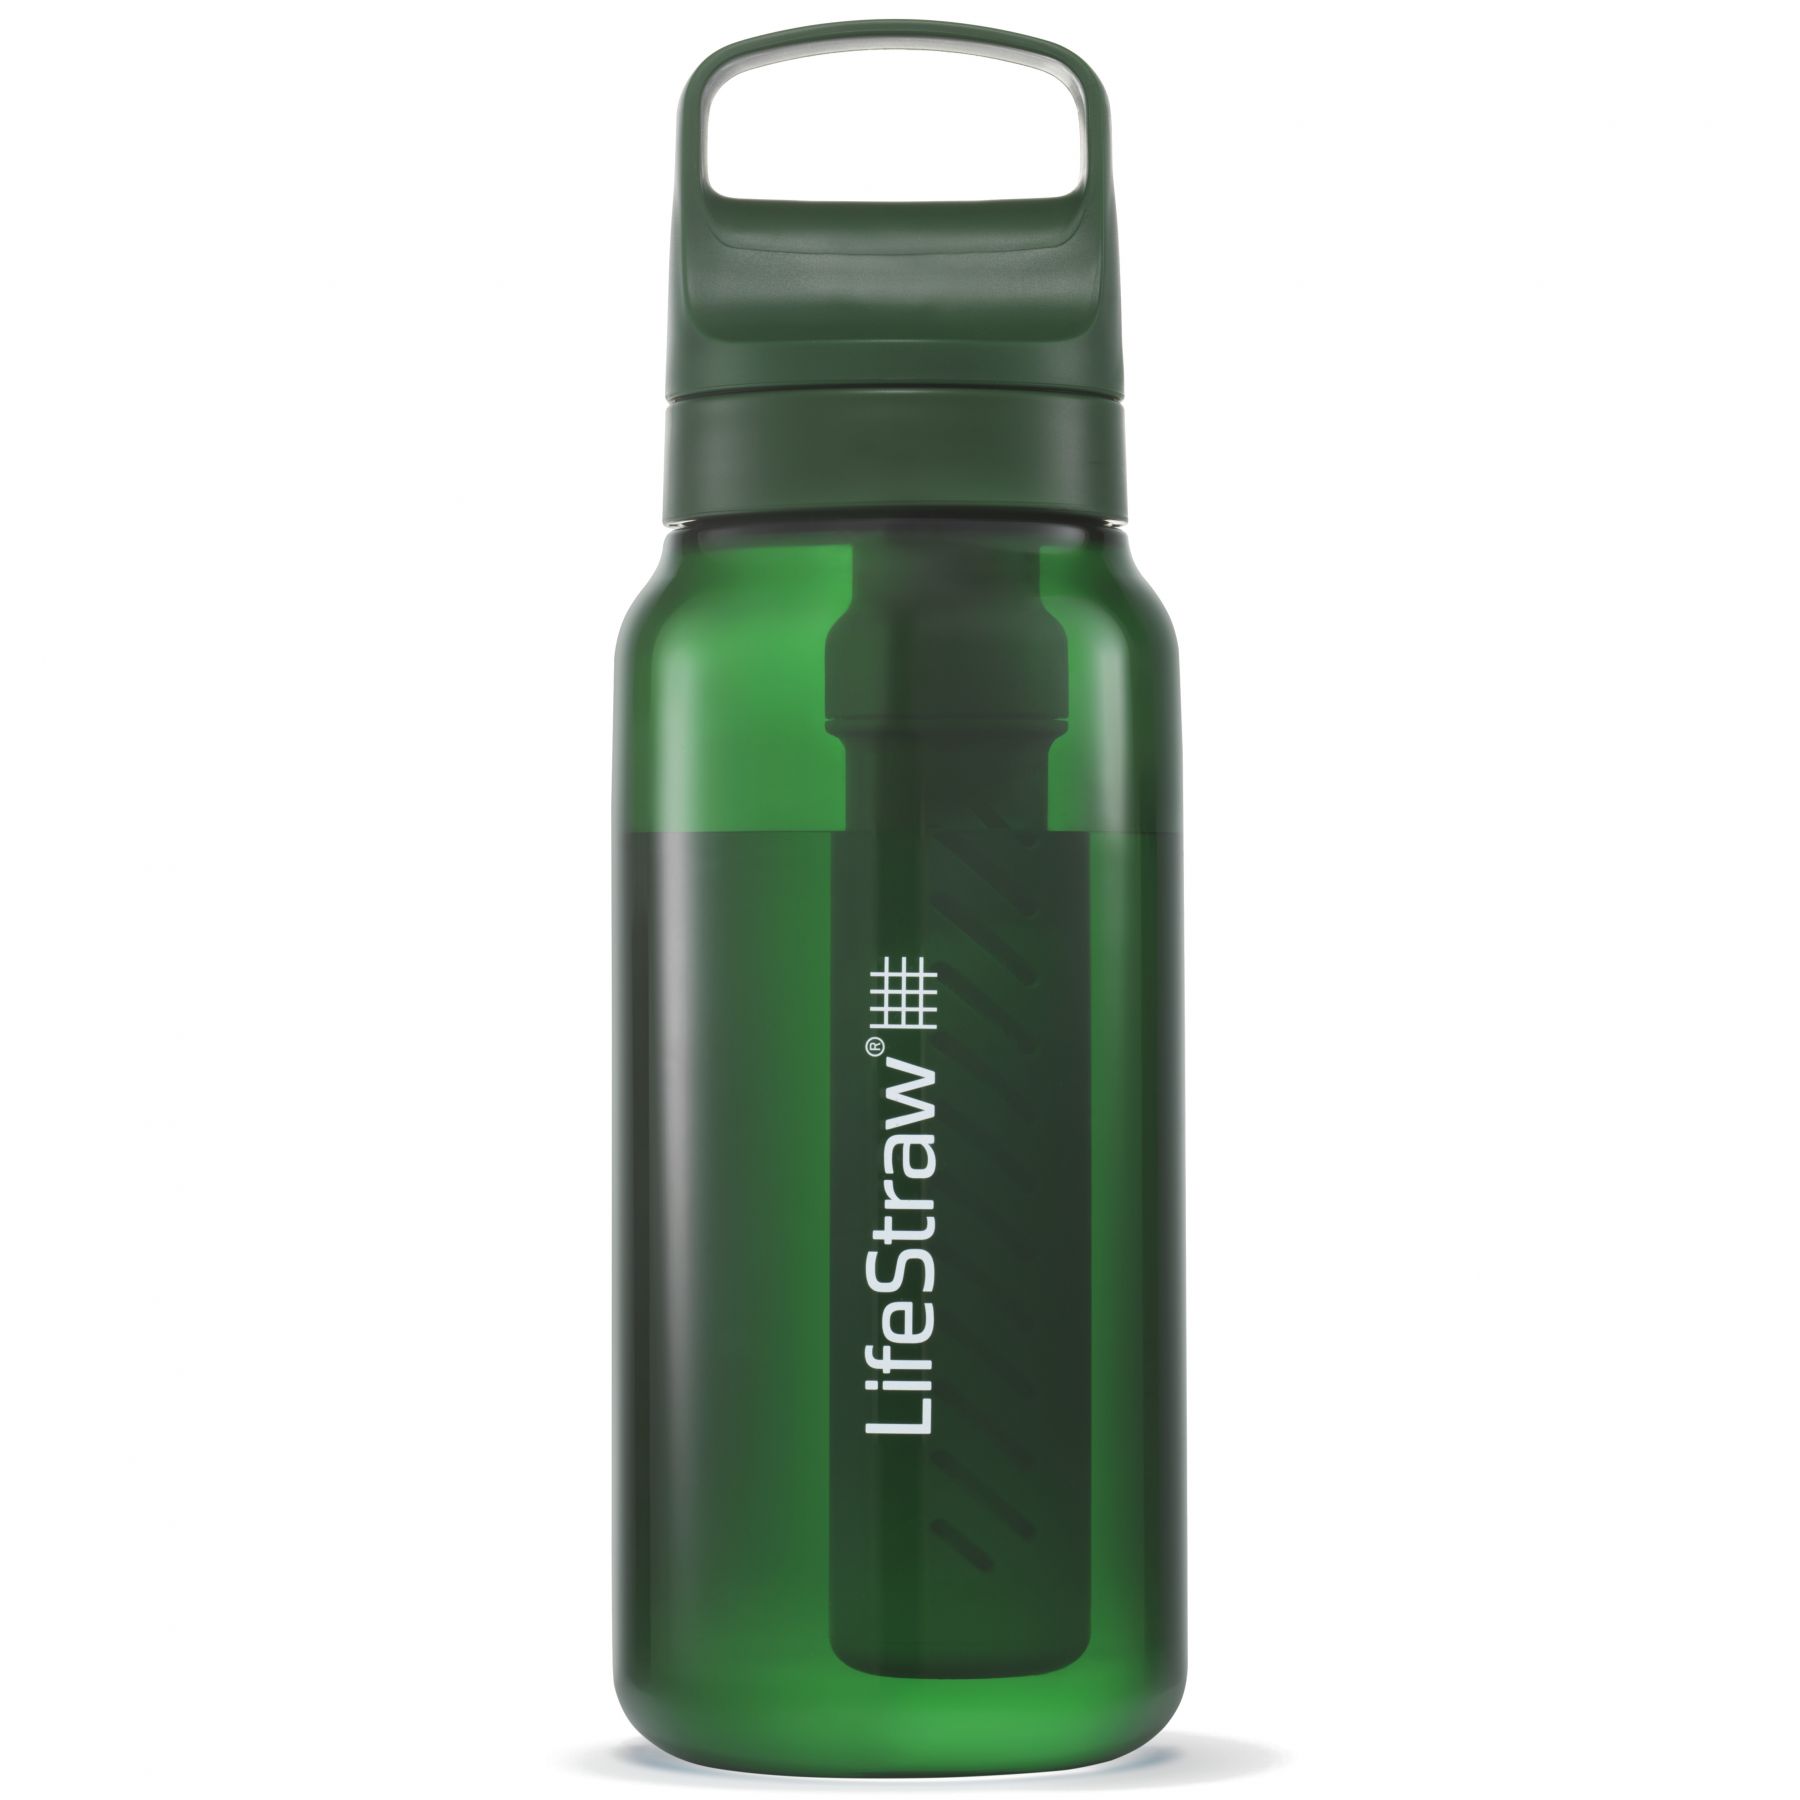 Brug LifeStraw Go 2.0 Series, 1L, grøn til en forbedret oplevelse